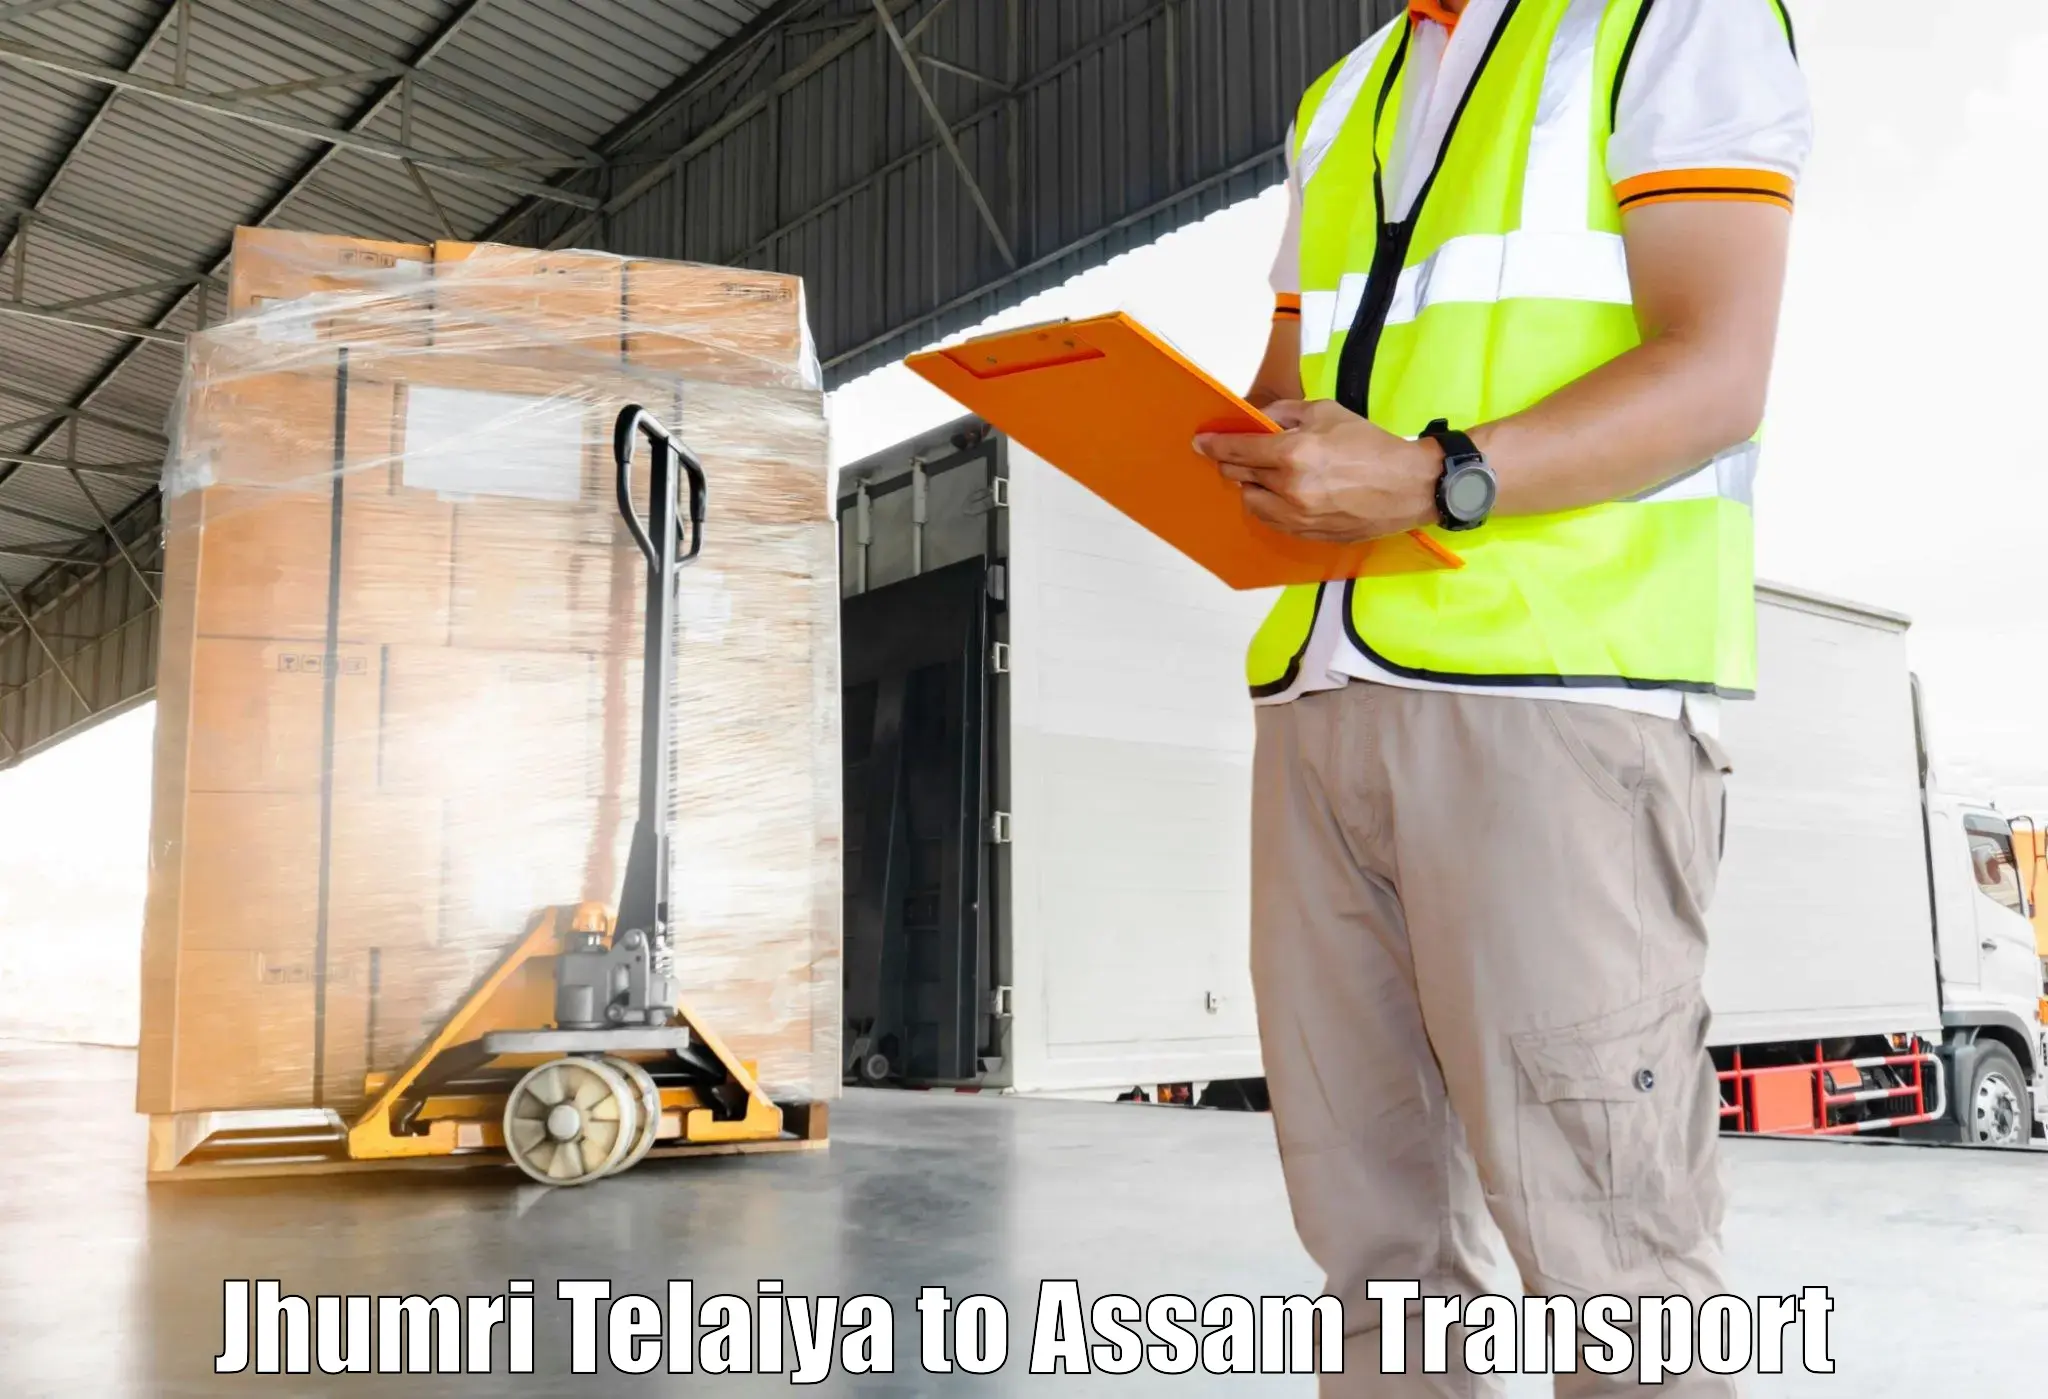 Road transport online services Jhumri Telaiya to Mazbat